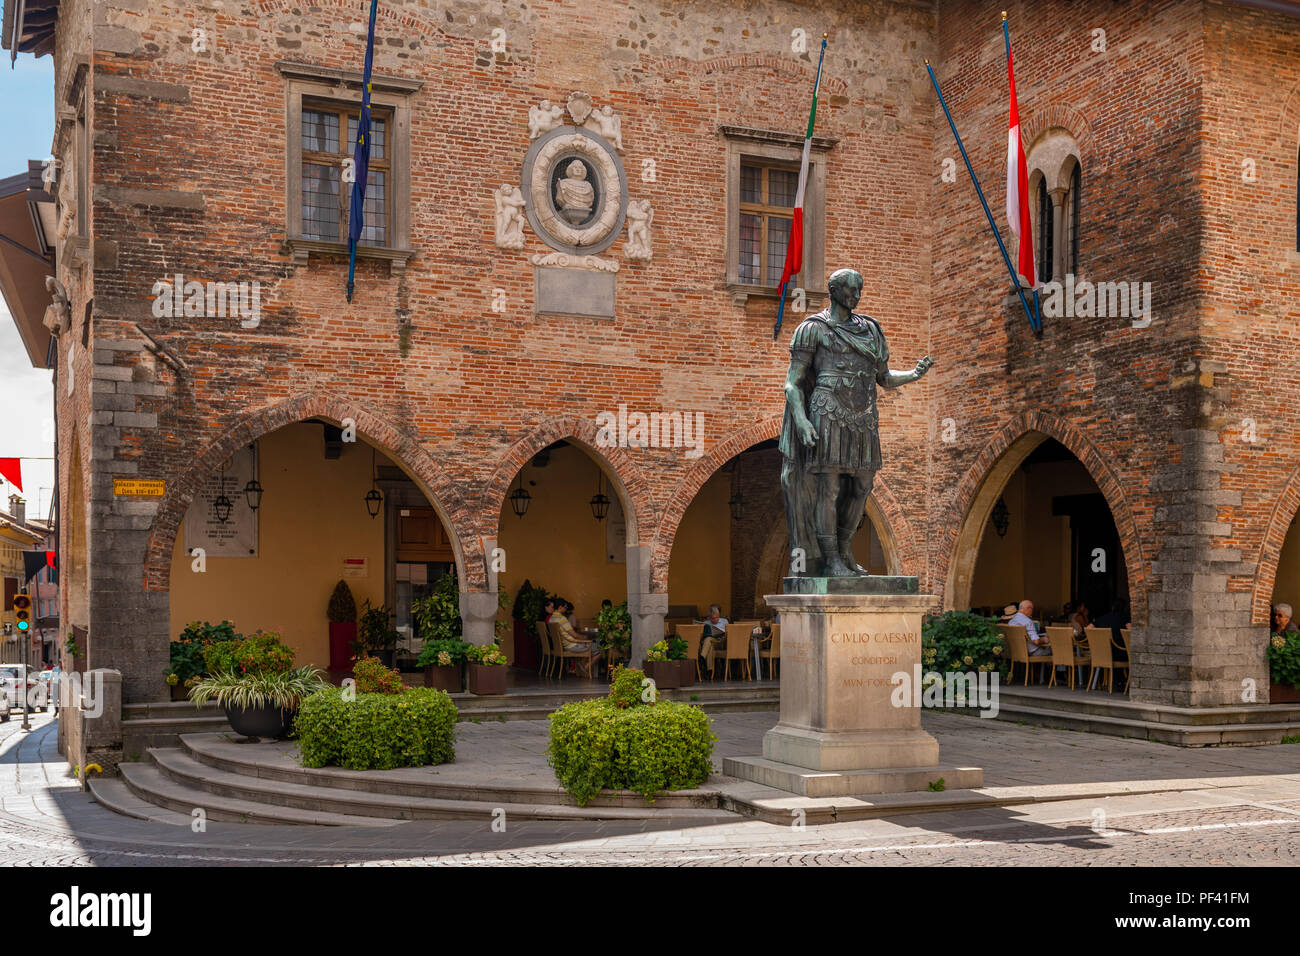 Statua in bronzo di Giulio Cesare, fondatore della città in Piazza del Duomo a Cividale del Friuli, Italia Foto Stock